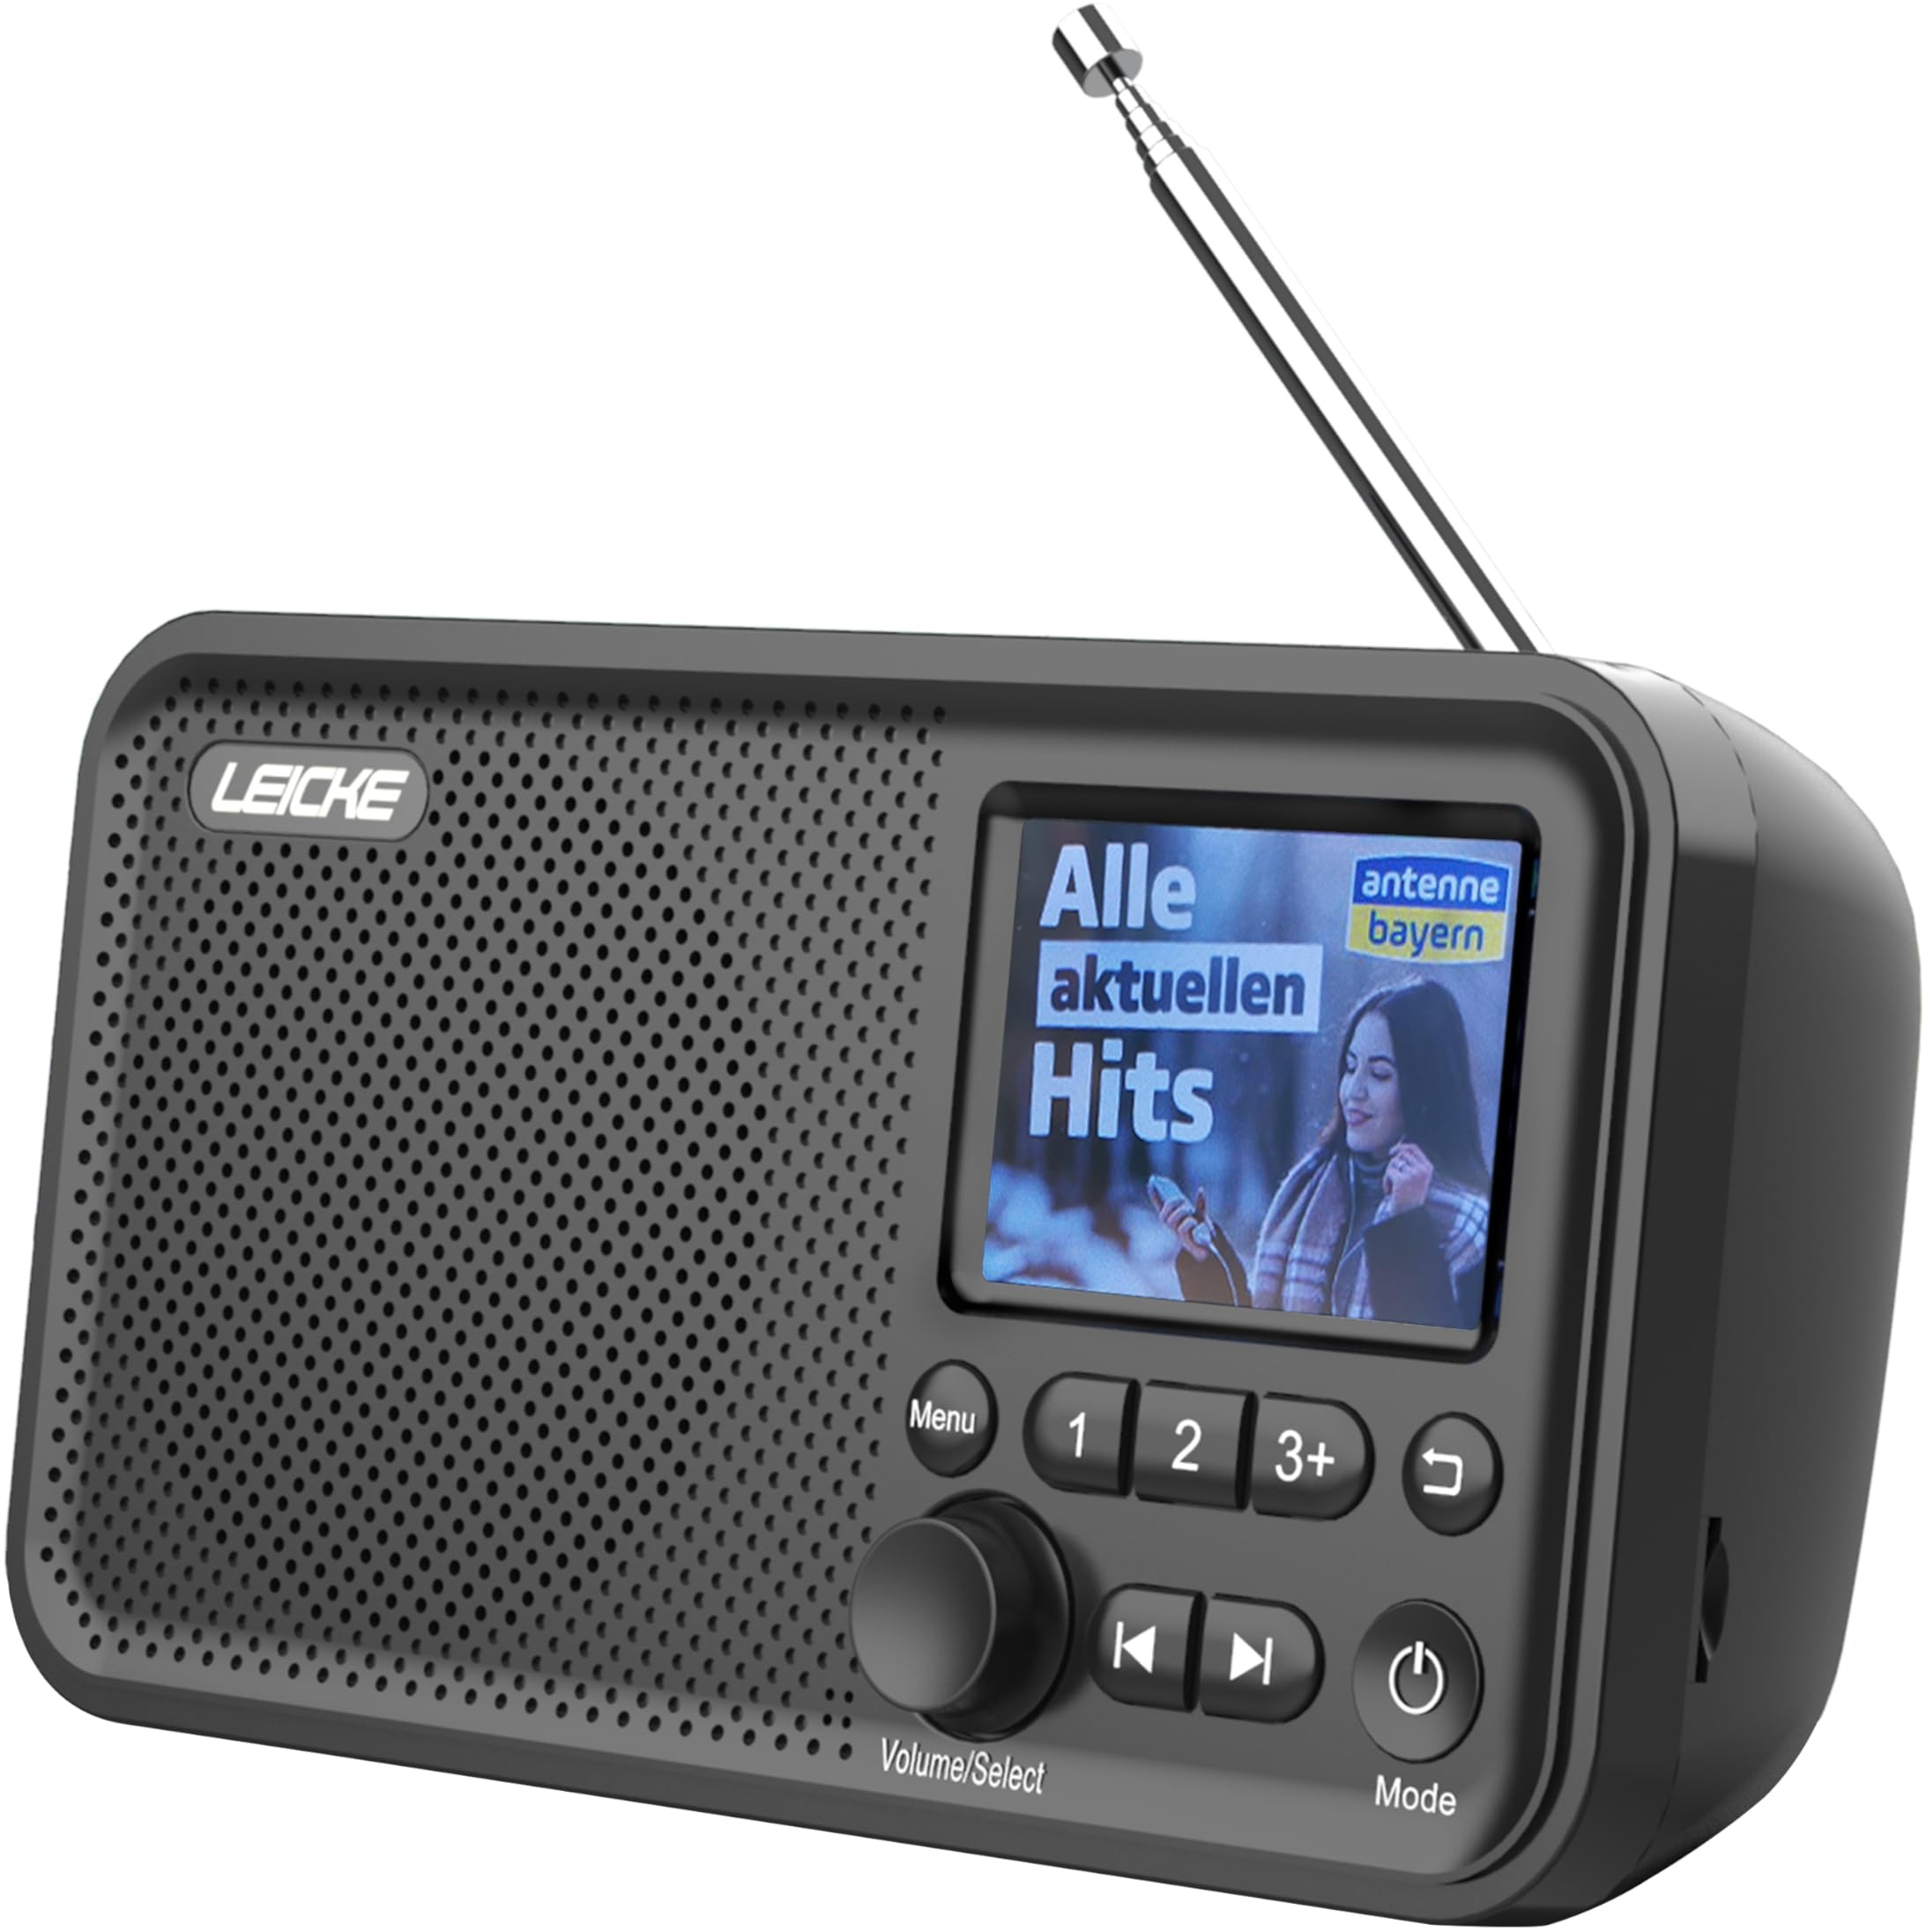 LEICKE tragbares DAB+ Radio mit Bluetooth 5.0 | DAB/DAB+ und UKW Radio, 2,4" Farbdisplay, 80 Voreinstellungen, Küchenradio mit Kabel oder 2000mAh Akkubetrieb, MicroSD/TF/AUX Anschluss, Alarmfunktionen